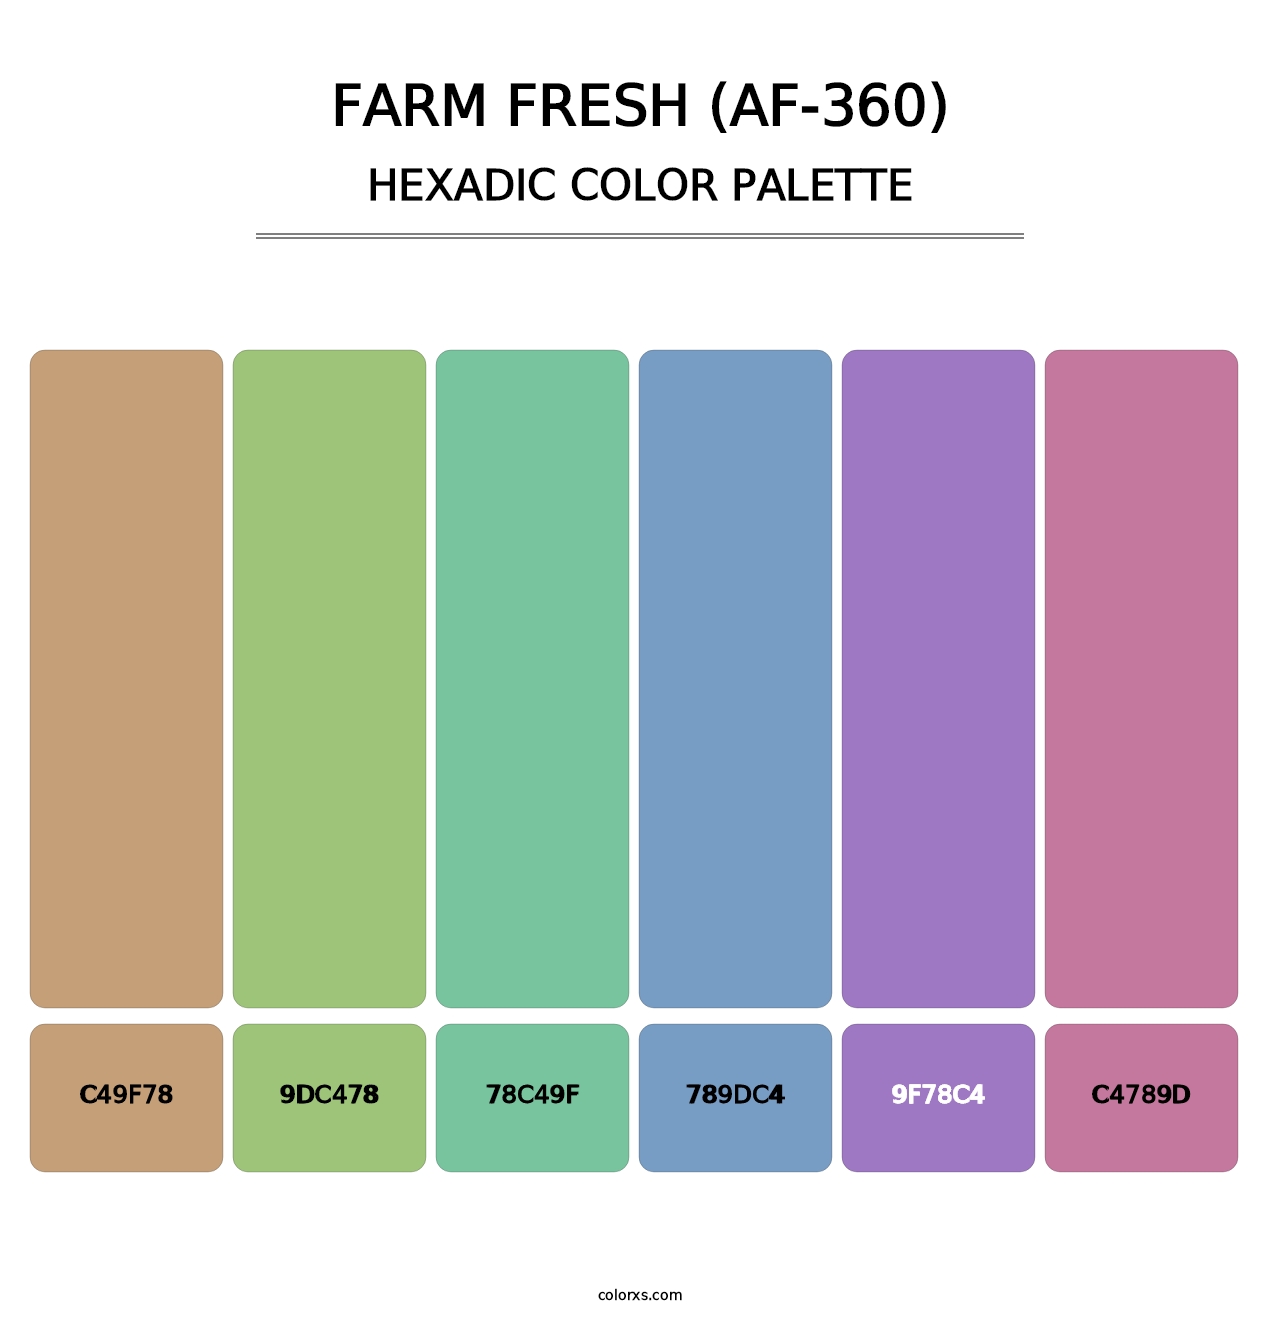 Farm Fresh (AF-360) - Hexadic Color Palette